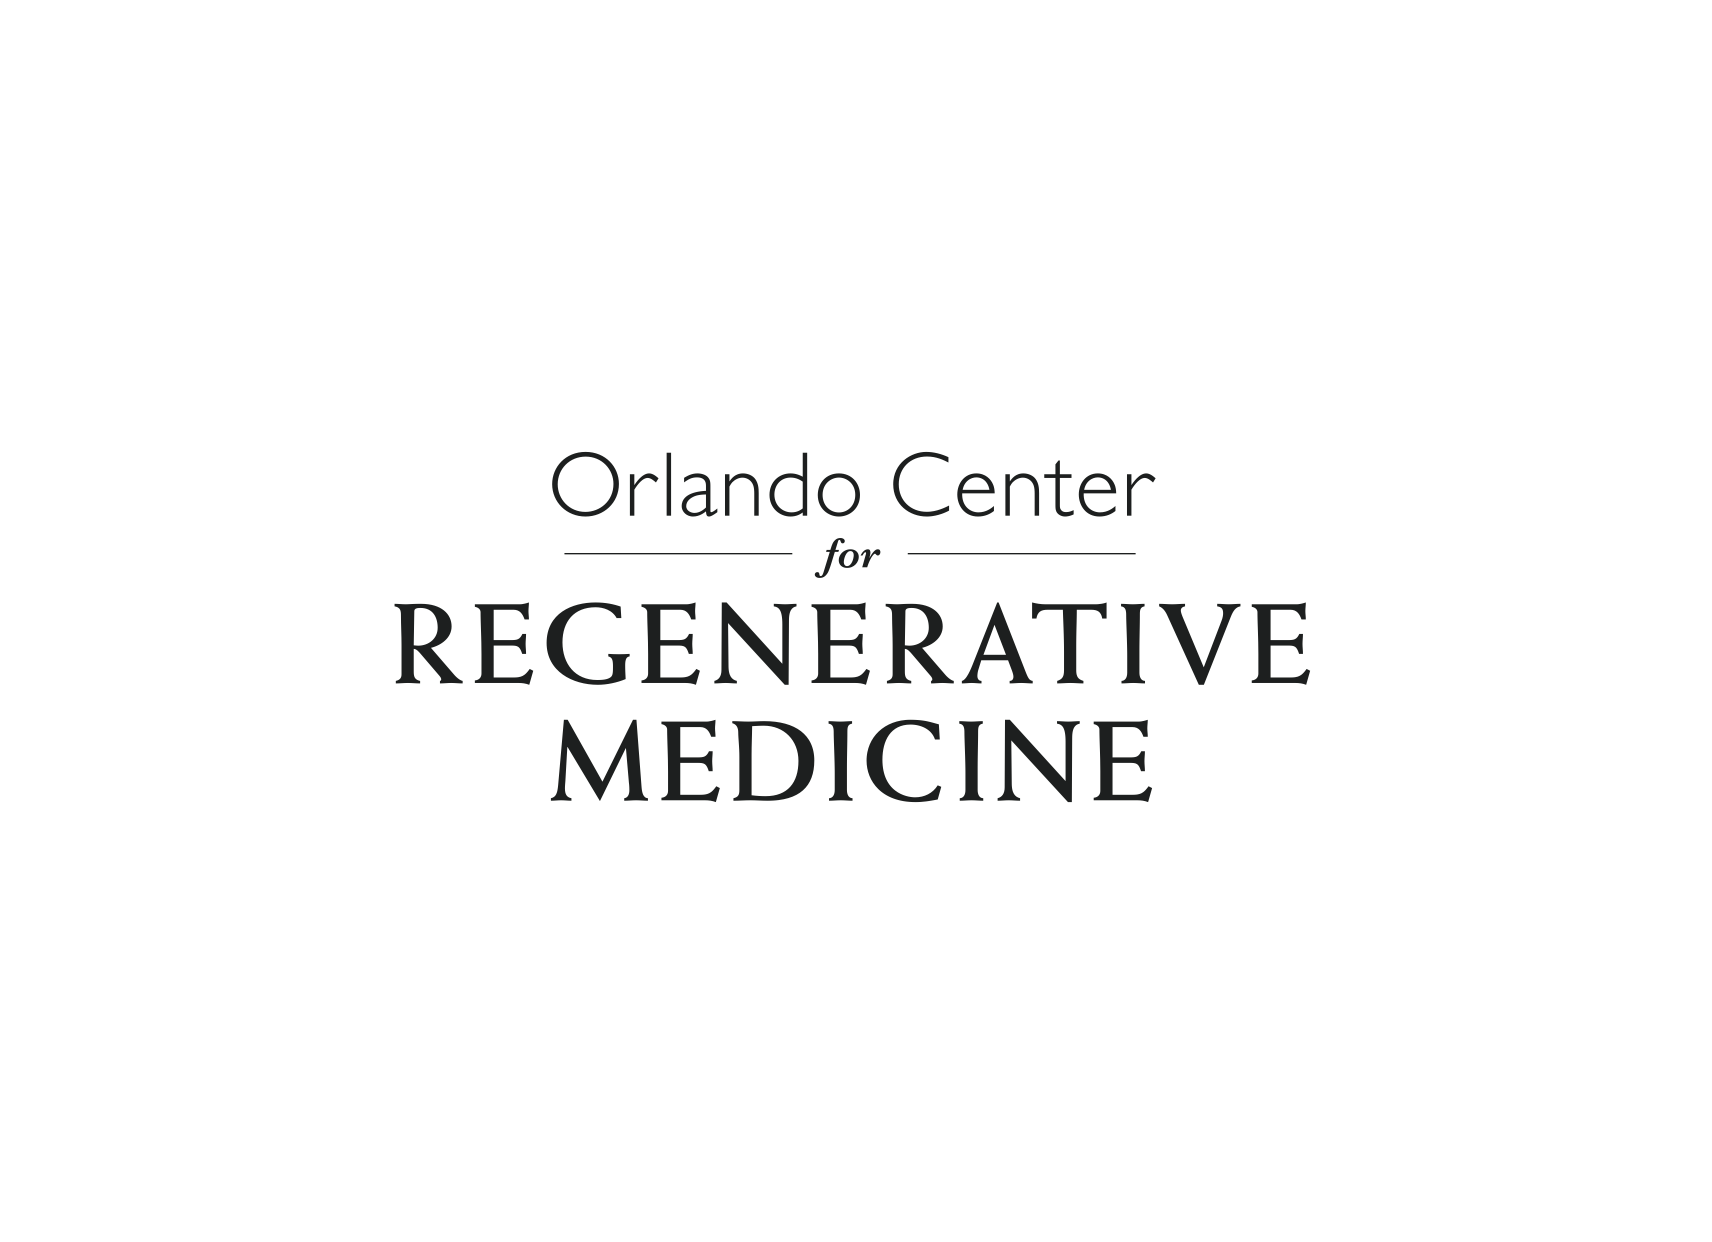 Orlando Center for Regenerative Medicine logo